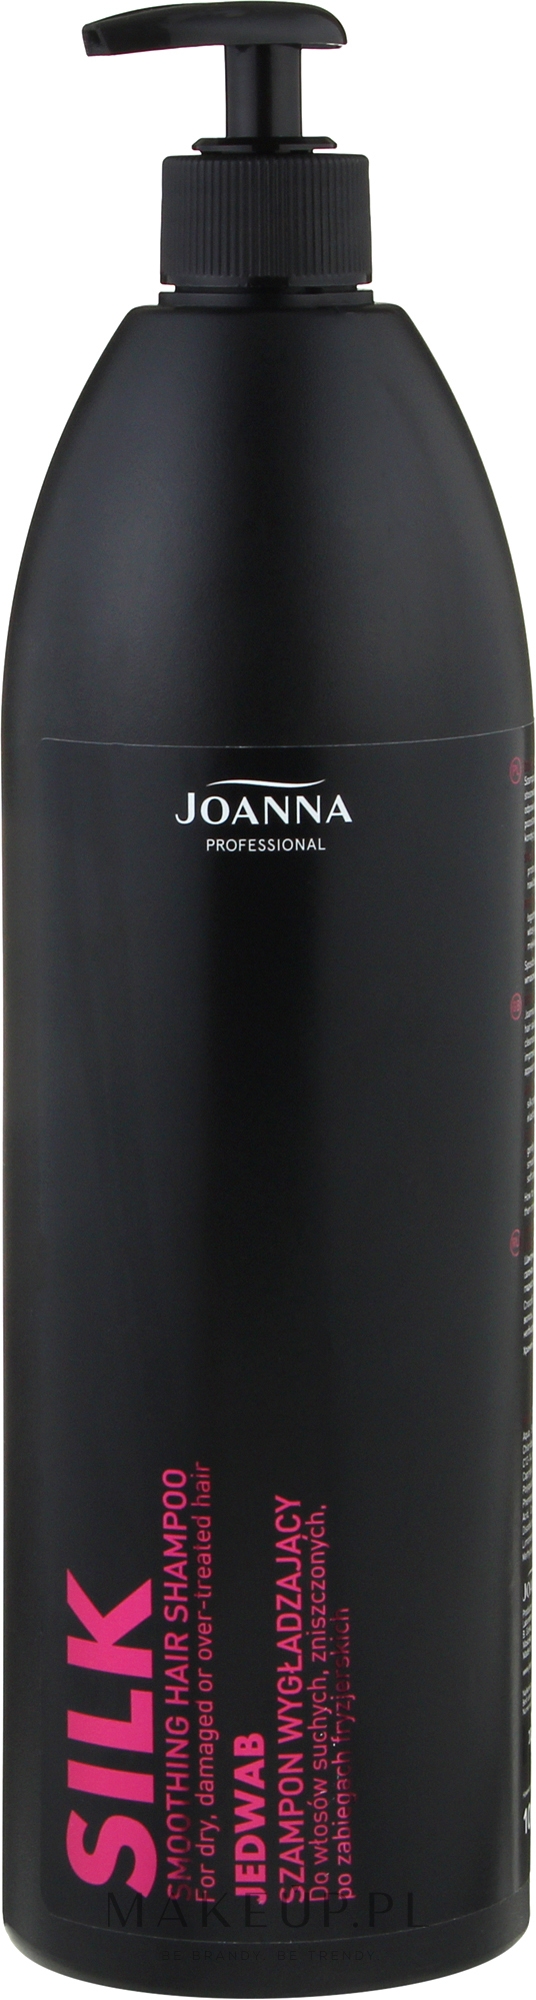 joanna professional szampon silk wizaz